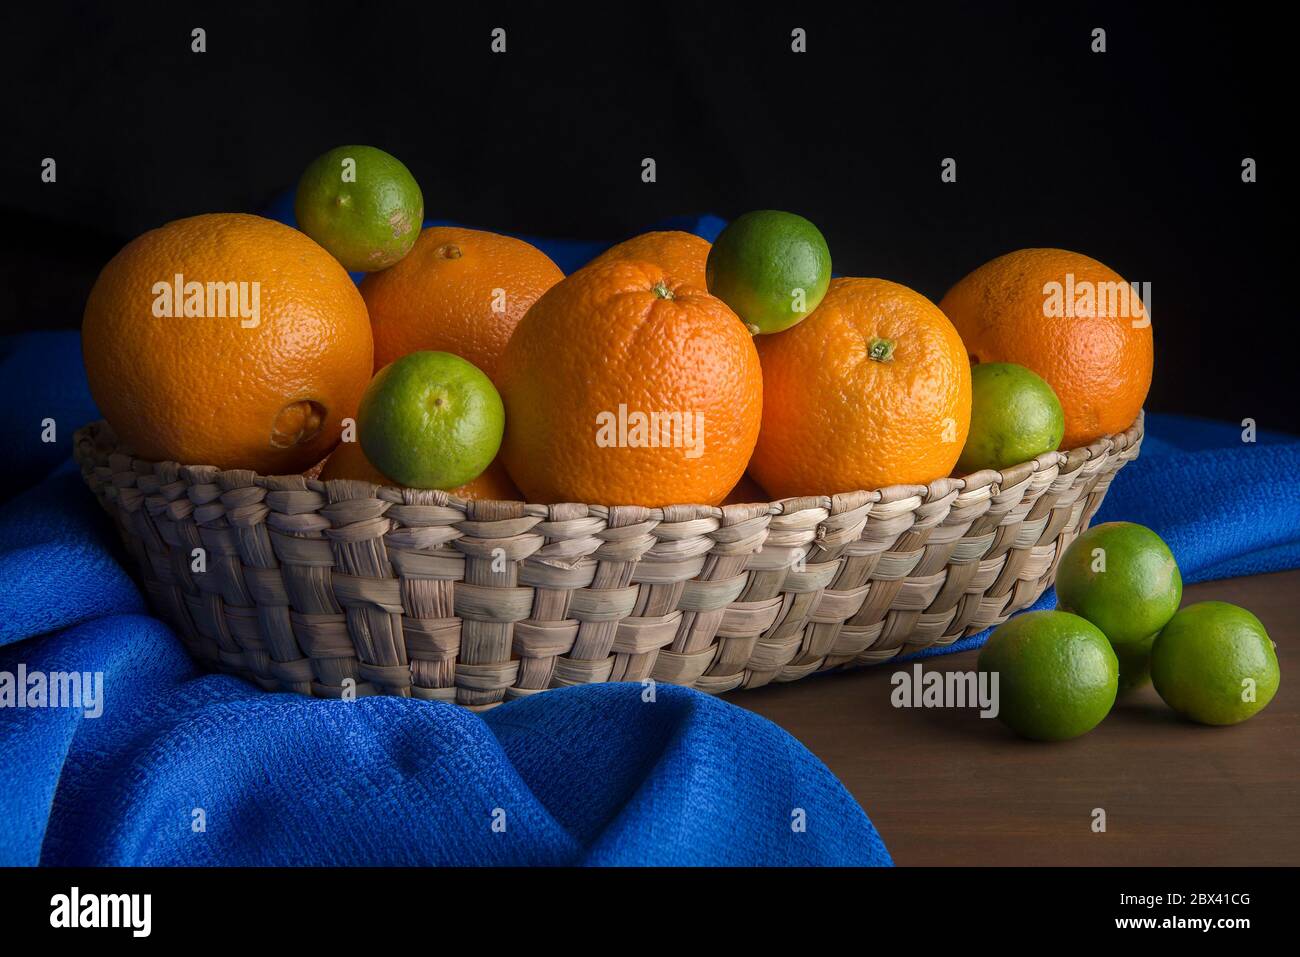 Ancora vita, luce bassa chiave, arance e limoni in un cestino messicano su un panno blu da tavolo Foto Stock